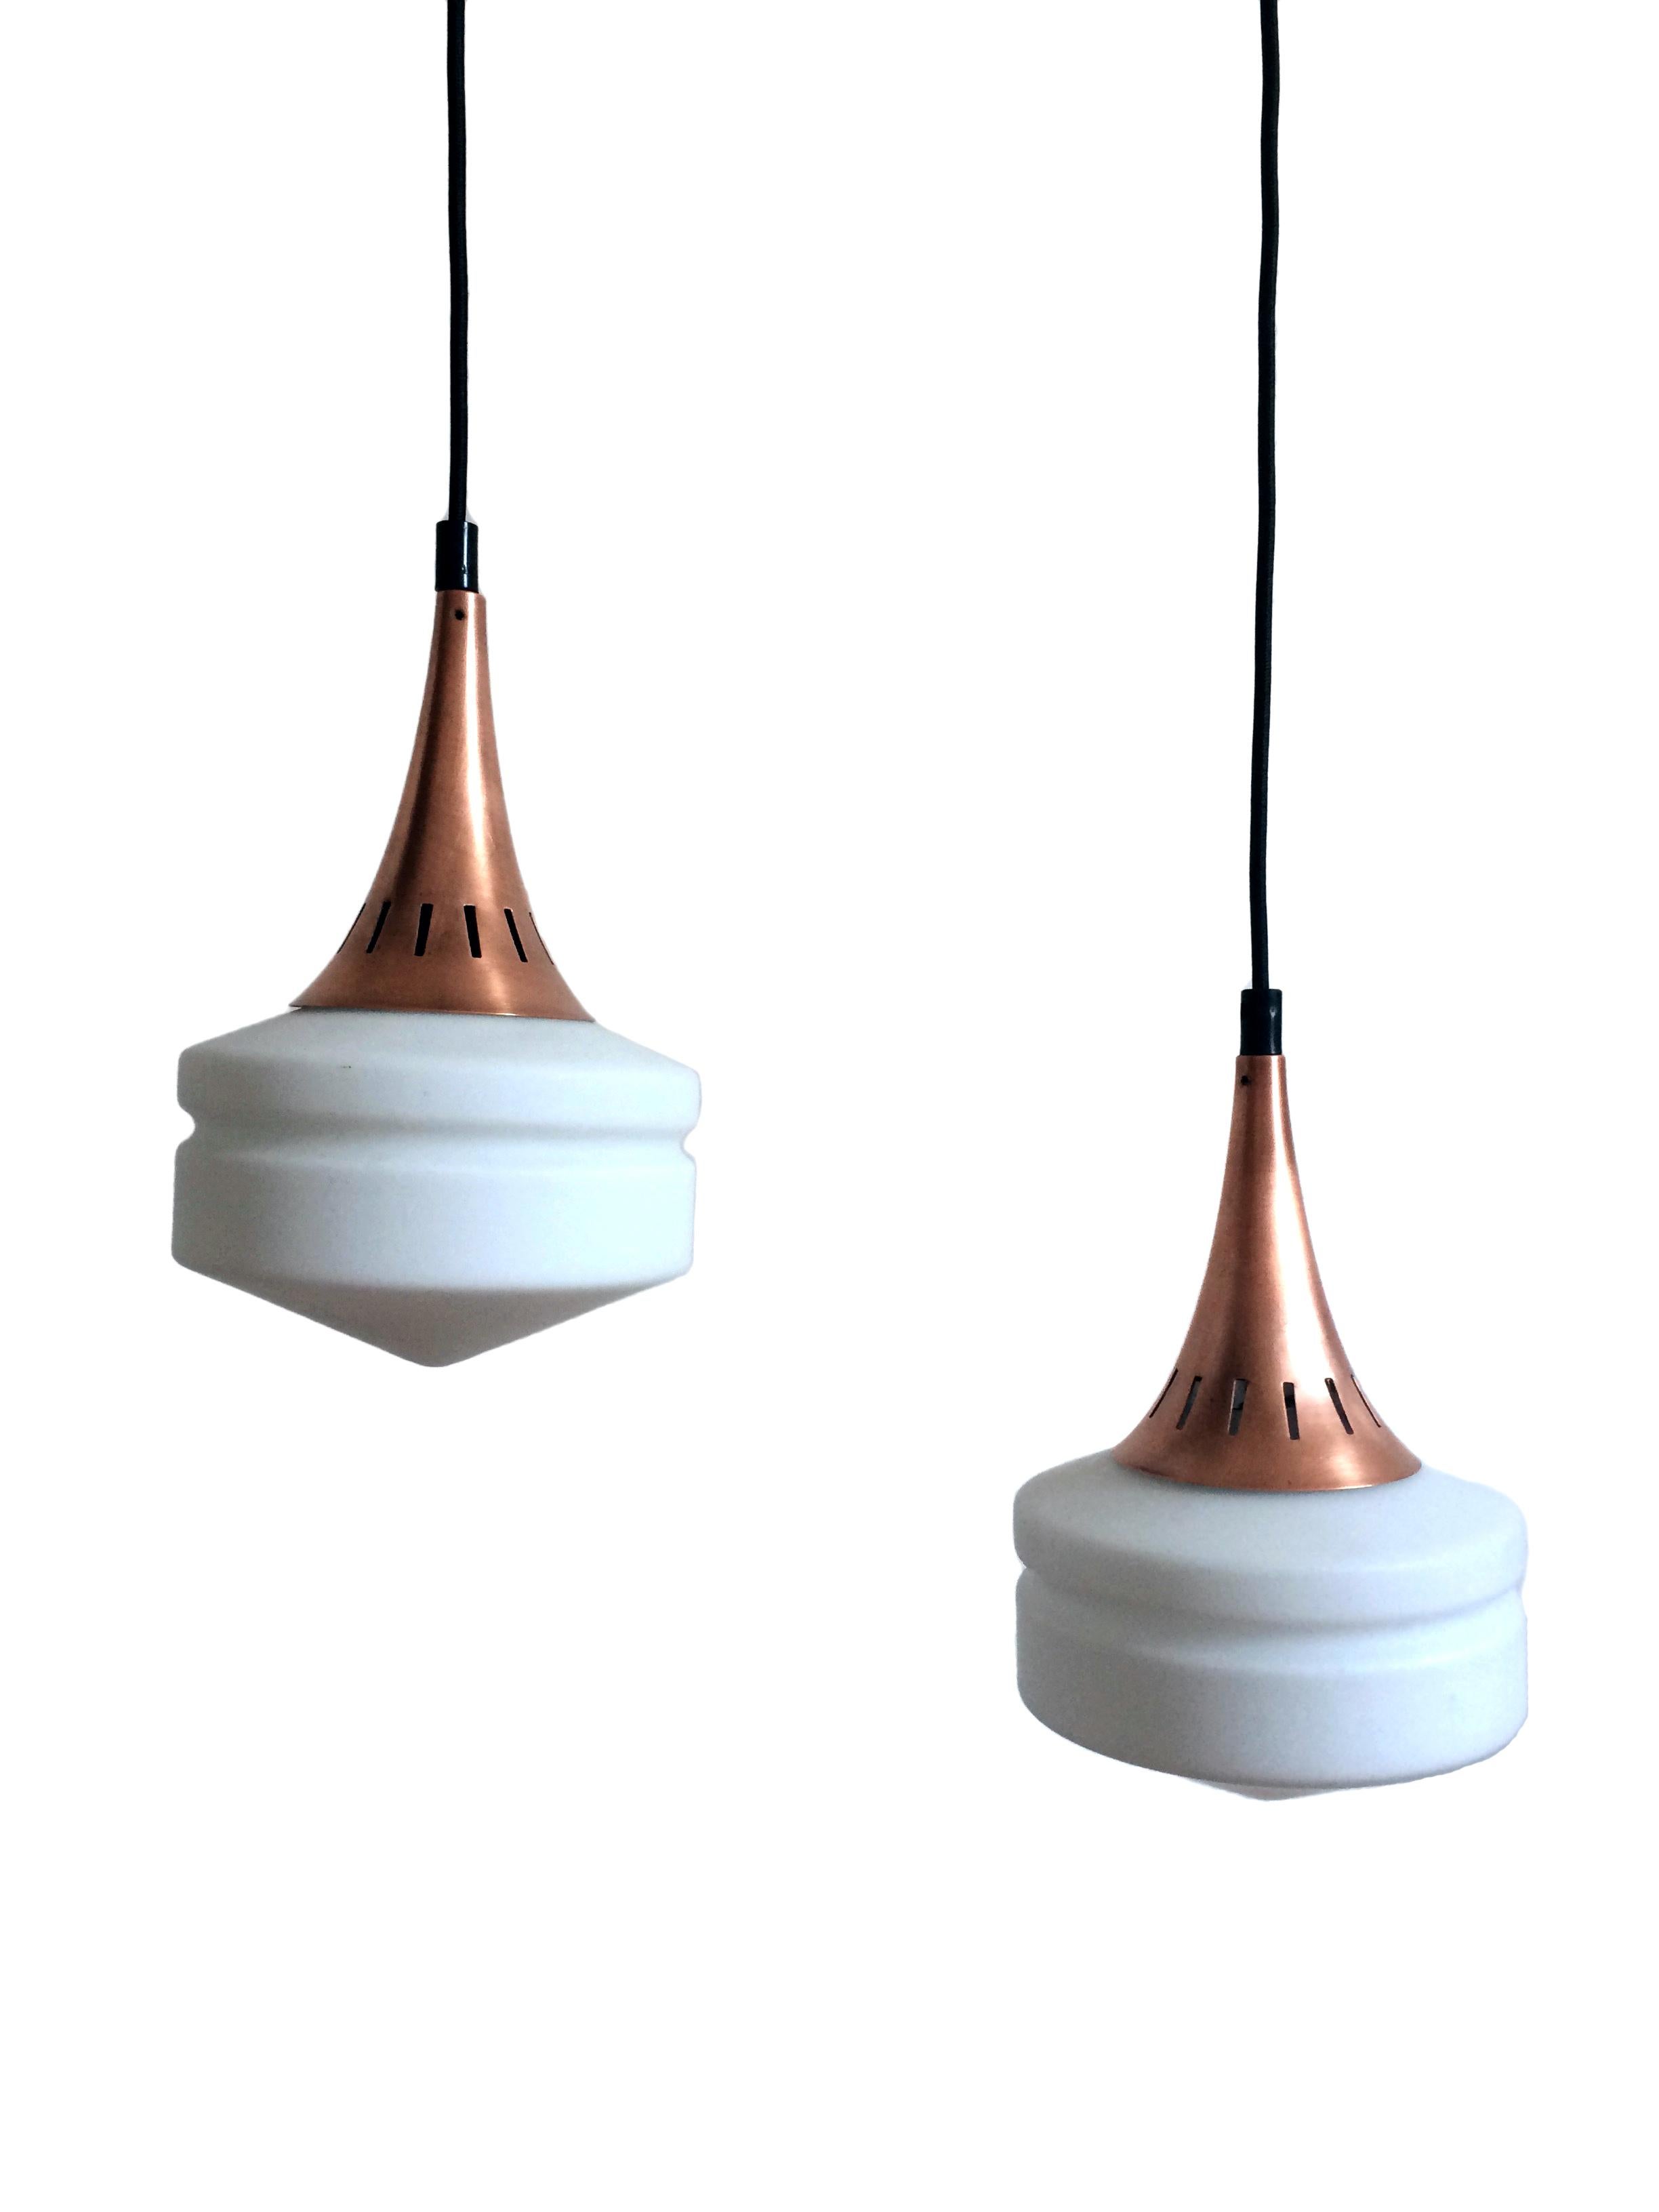 Italian Two-light pendant lamp, Stilnovo For Sale